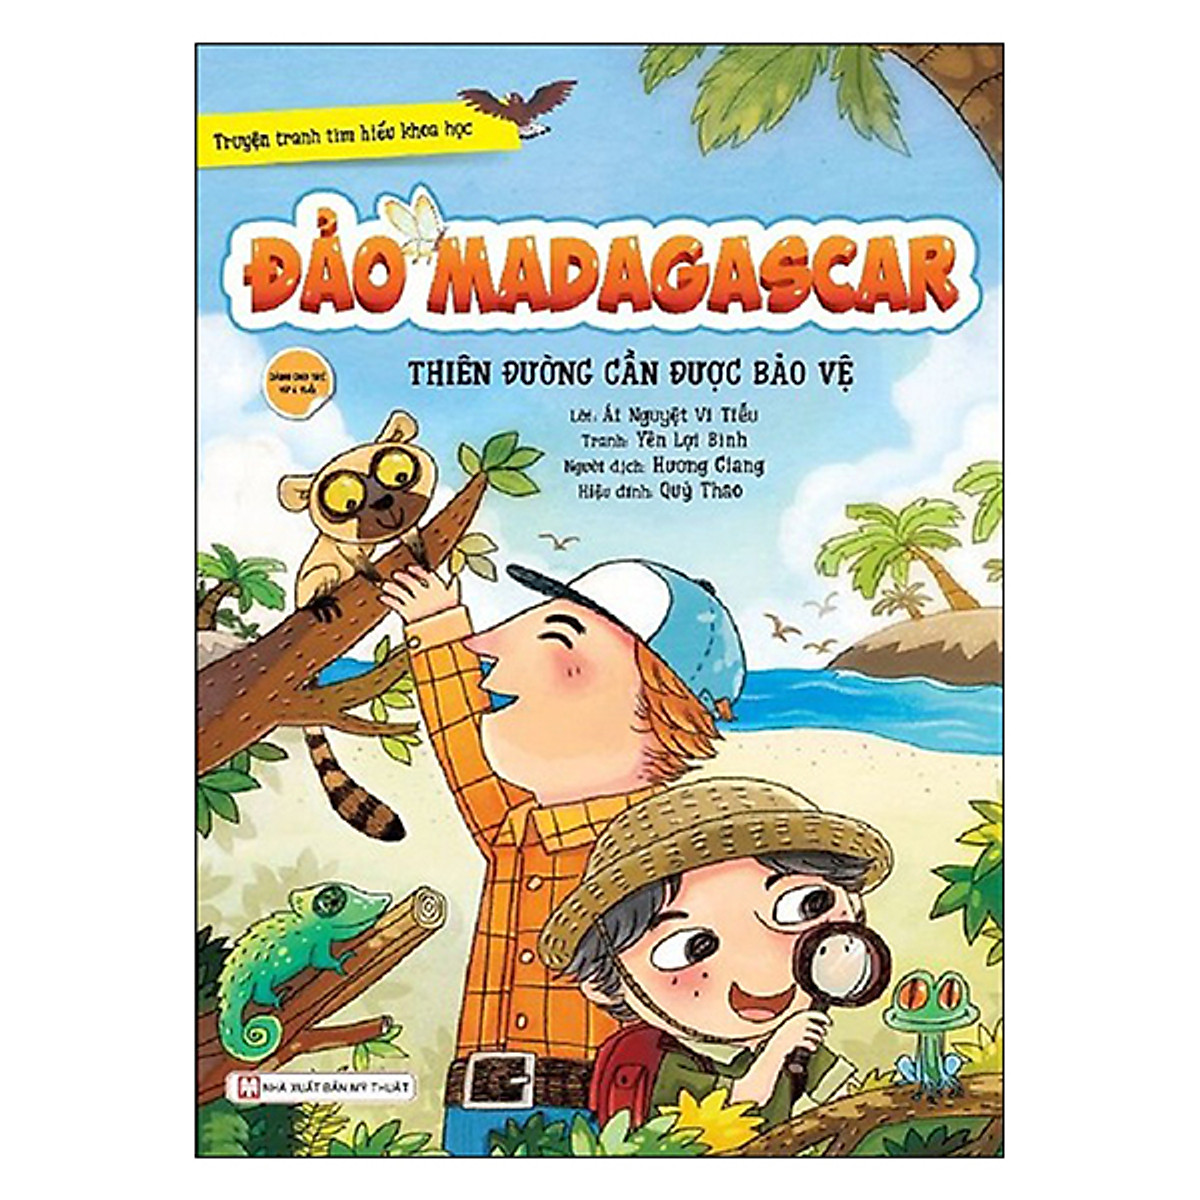 Đảo Madagscar - Thiên Đường Cần Được Bảo Vệ